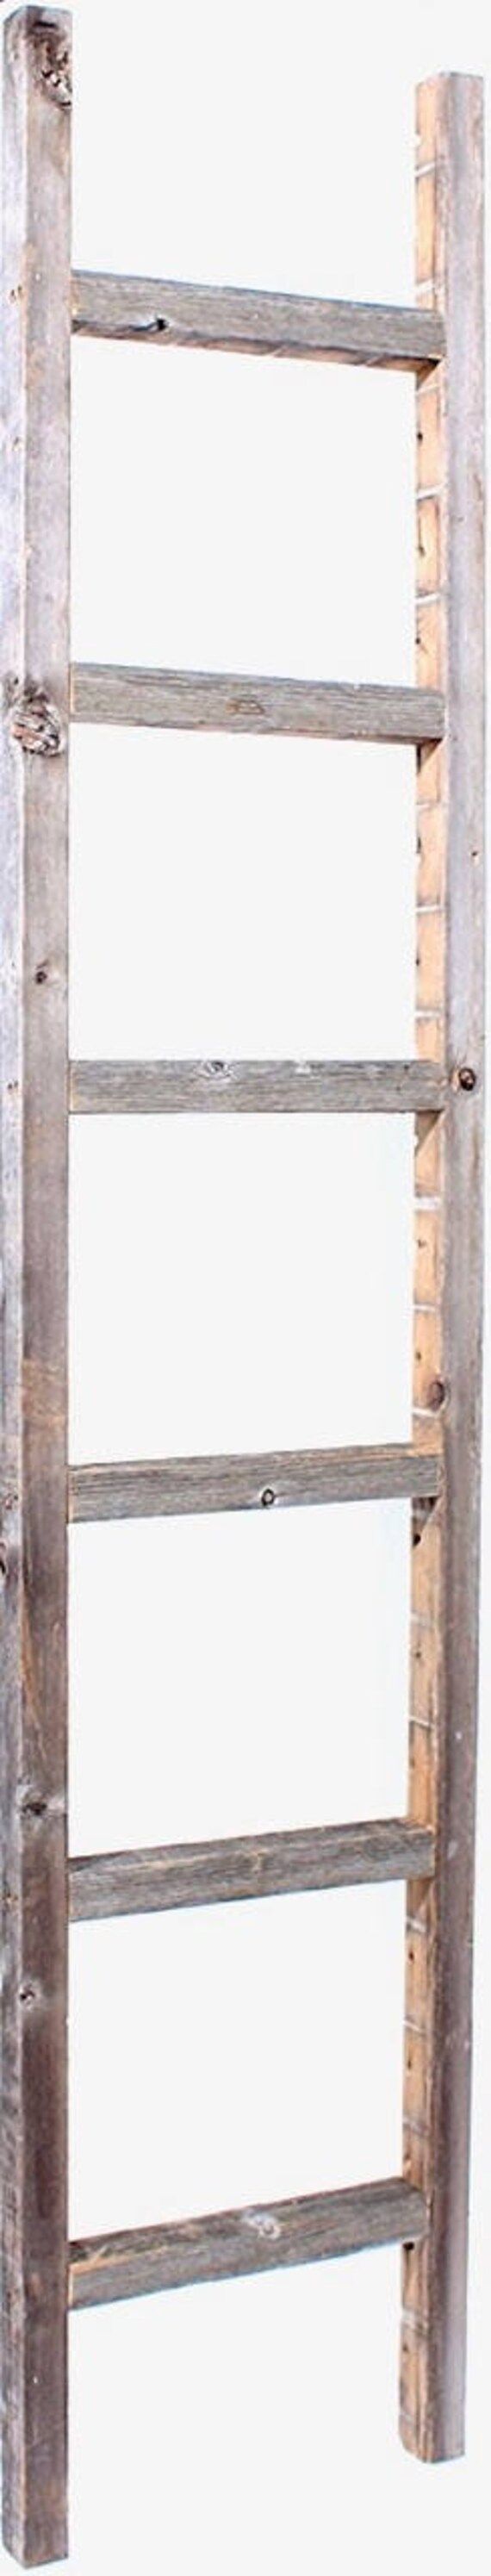 Blanket Ladder | Decorative Ladder | Towel Ladder | Quilt Ladder | 100% Reclaimed Wood Ladder, Weath | Etsy (US)